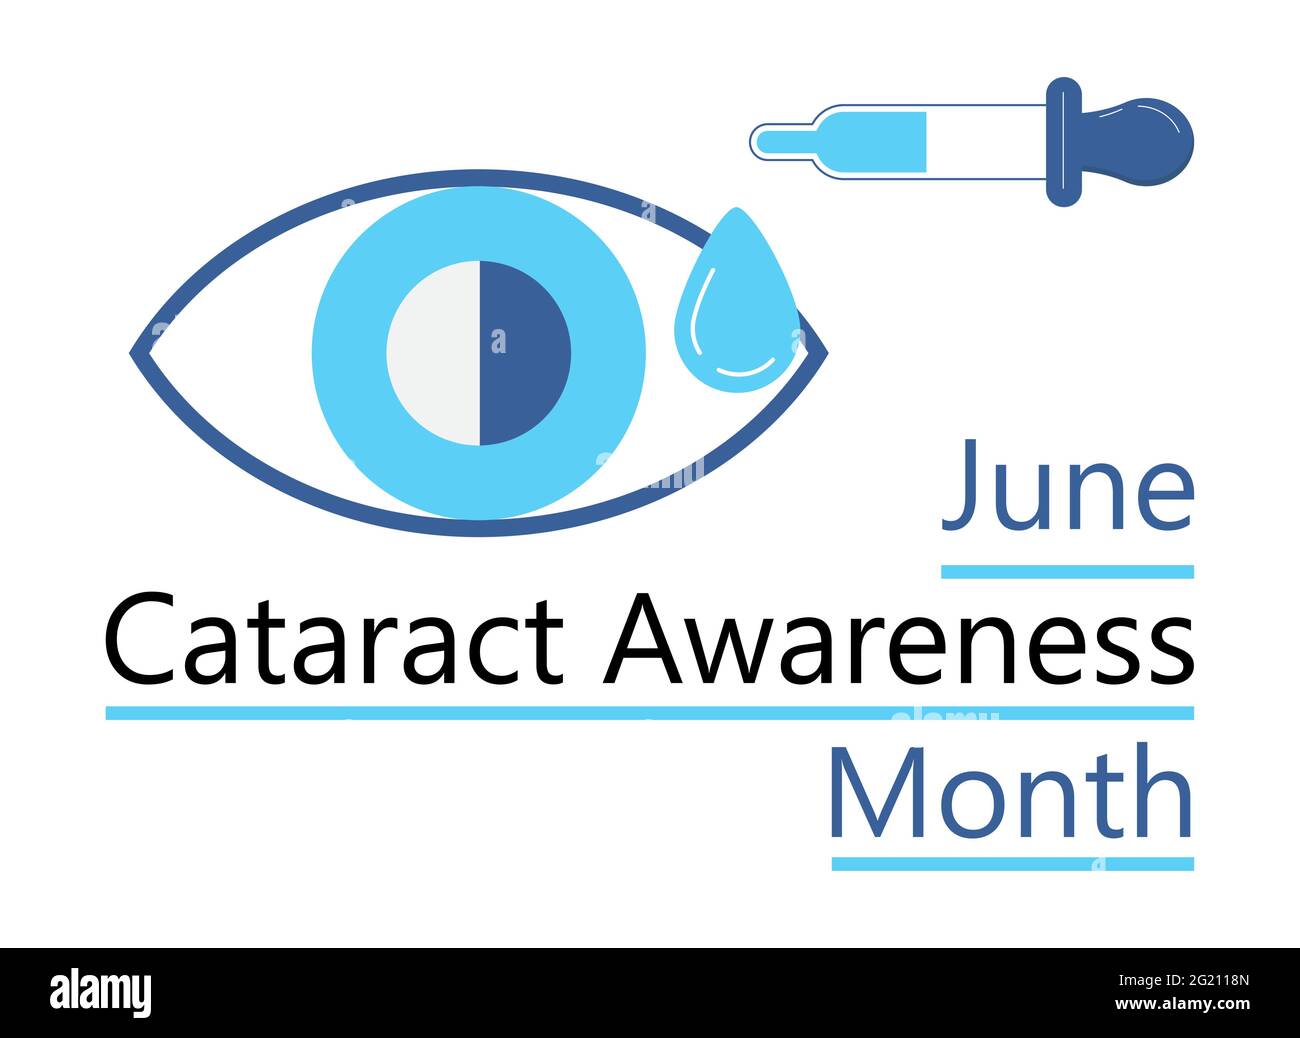 Im Juni wird der Monat des Kataraktbewusstseins gefeiert. Glaukom-Erkrankung und Nephropathie Probleme. Augenarzt, okulistisches Konzept Illustration. Augenlicht che Stock Vektor